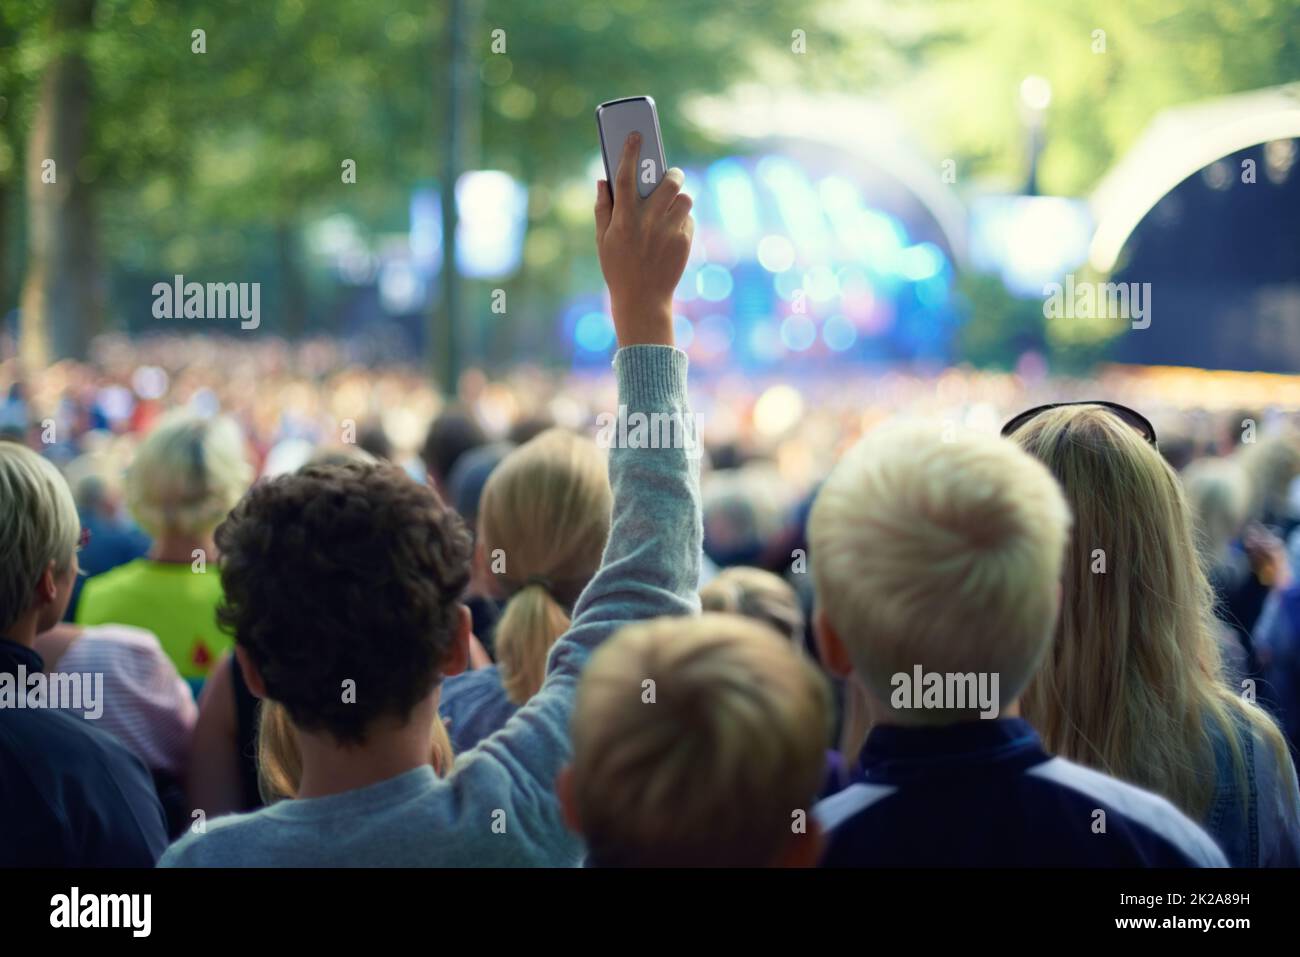 Immortalisez l'instant présent. Photo d'un membre de la foule prenant une photo avec son appareil photo lors d'un festival de musique. Banque D'Images